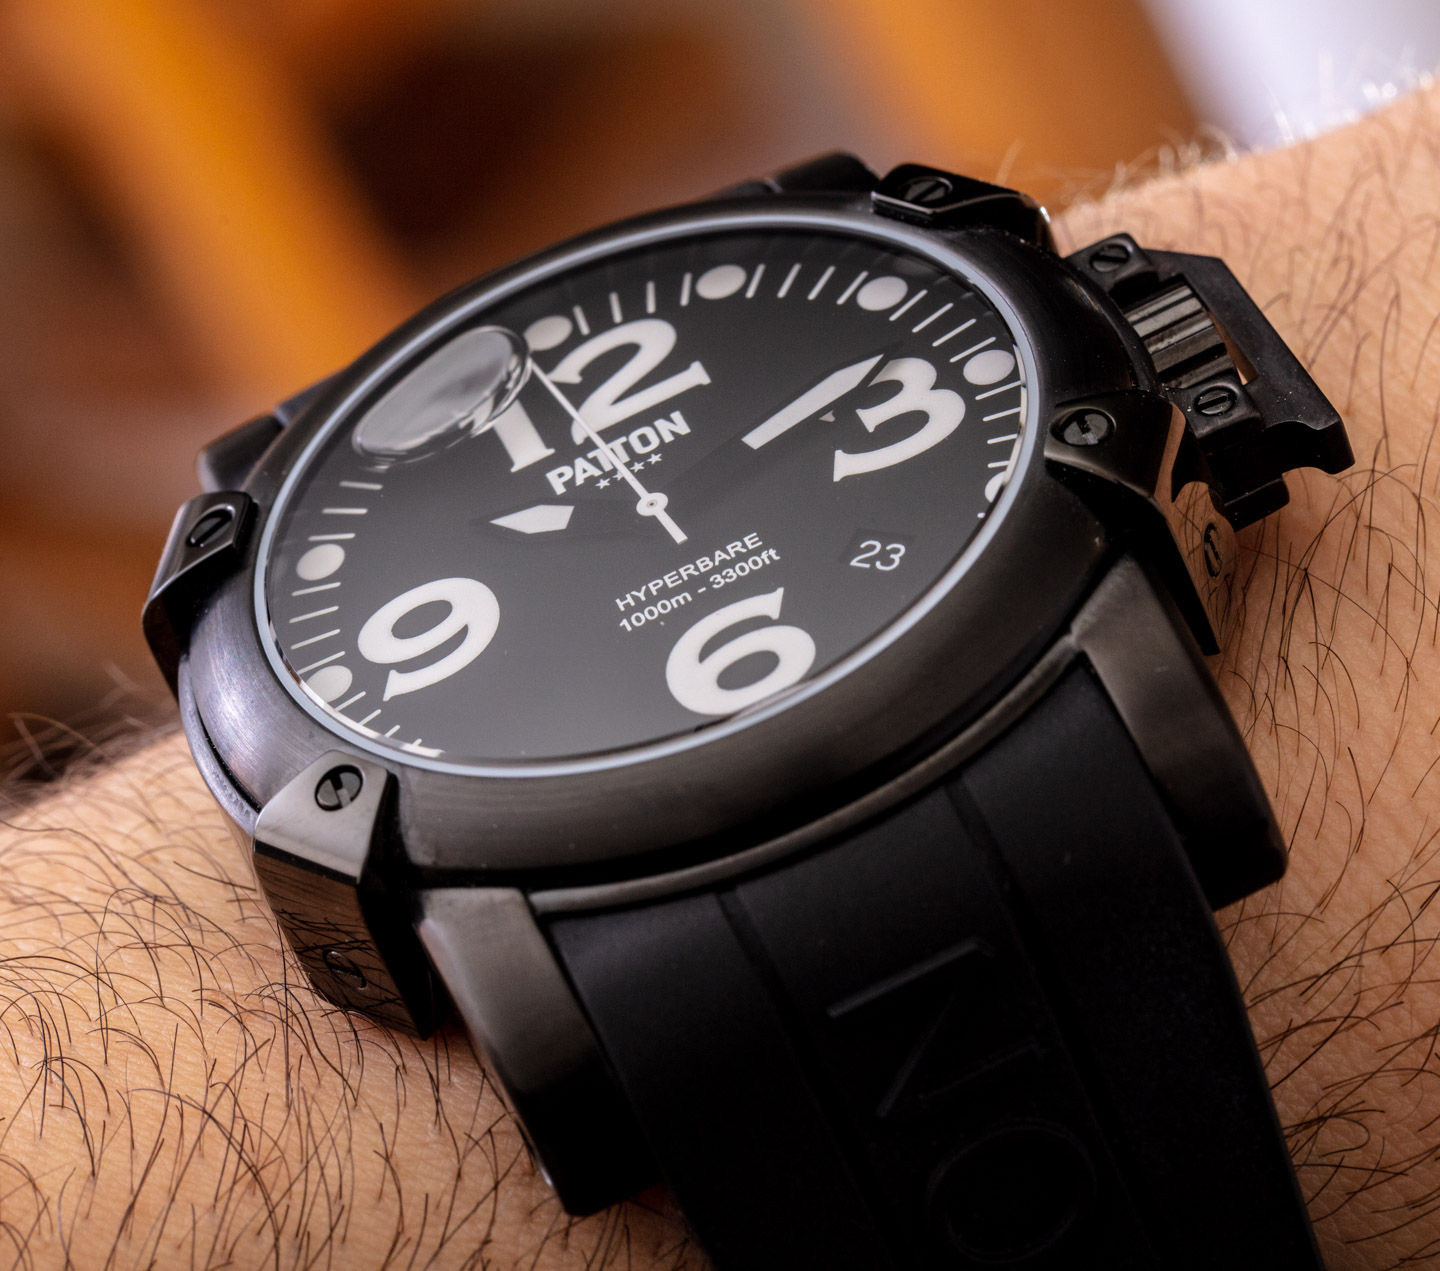 Patton品牌矿物油填充的Hyperbare手表